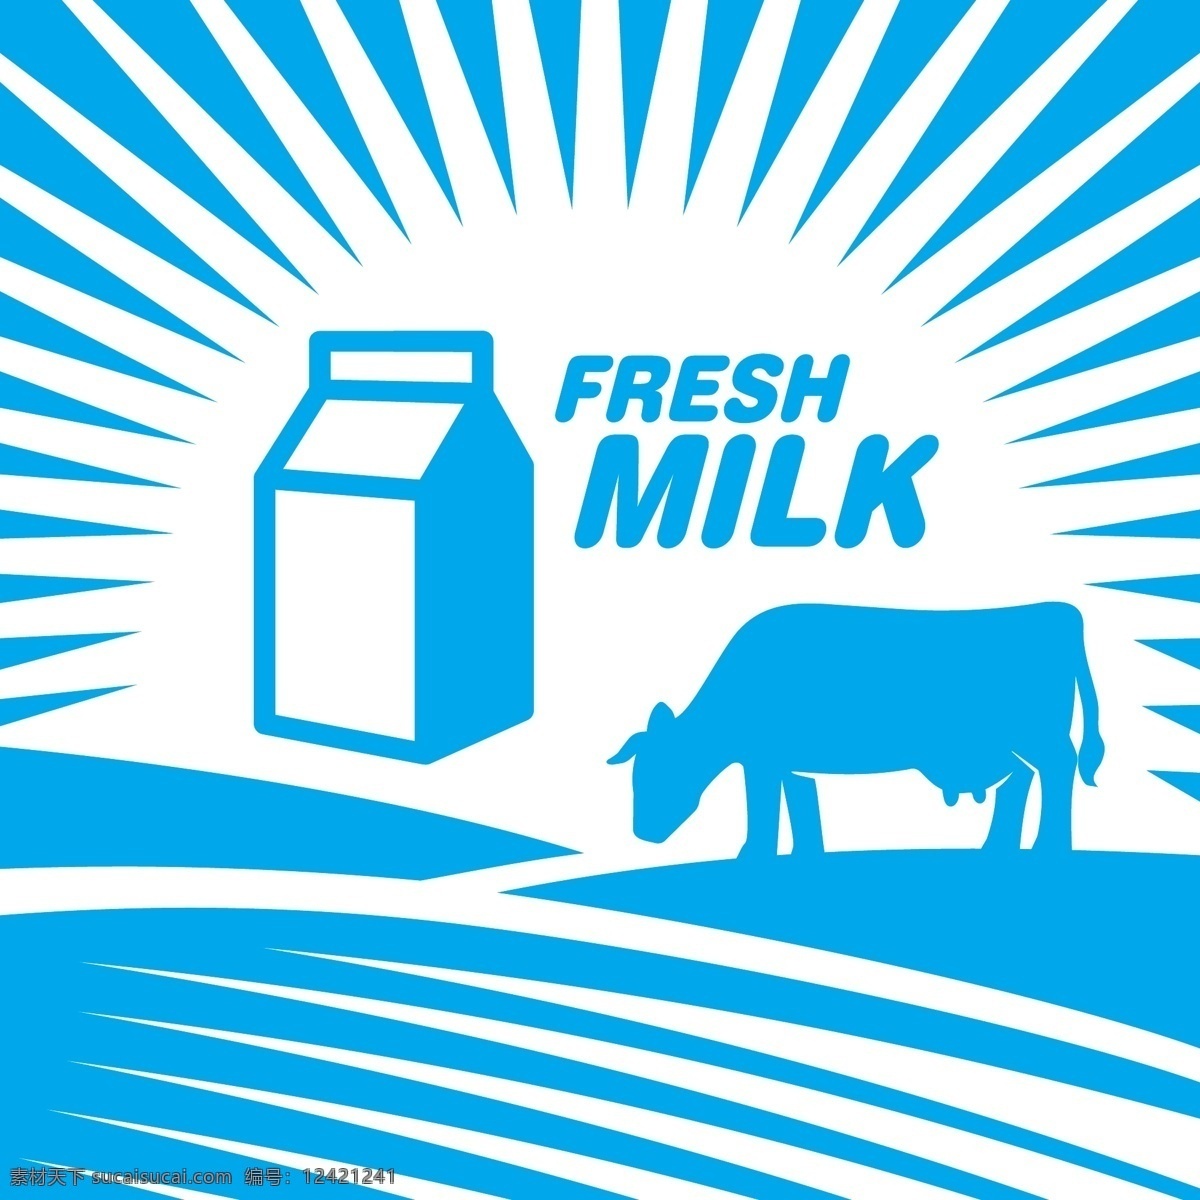 创意牛奶海报 奶牛剪影 牛奶盒 牛奶海报 放射背景 射线背景 生活百科 矢量素材 白色